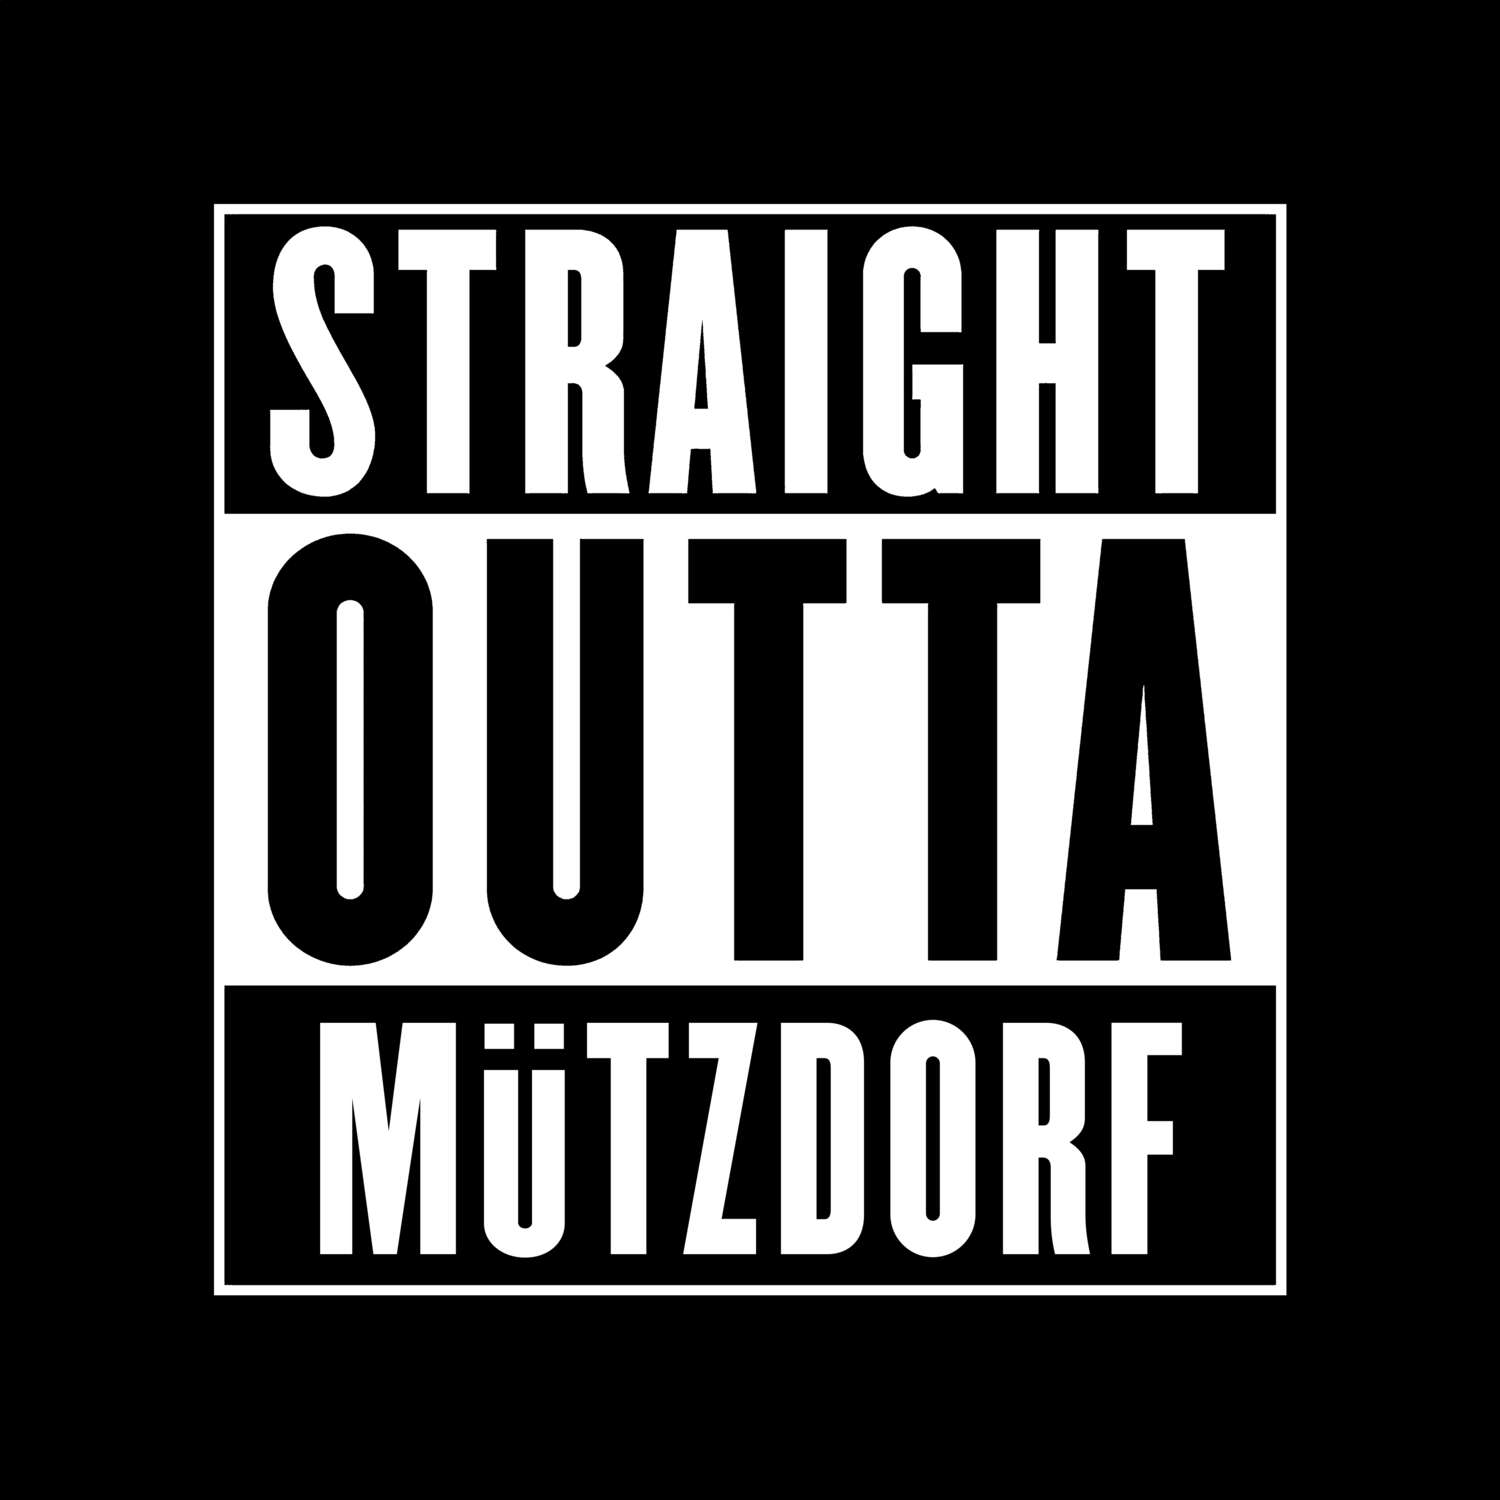 Mützdorf T-Shirt »Straight Outta«